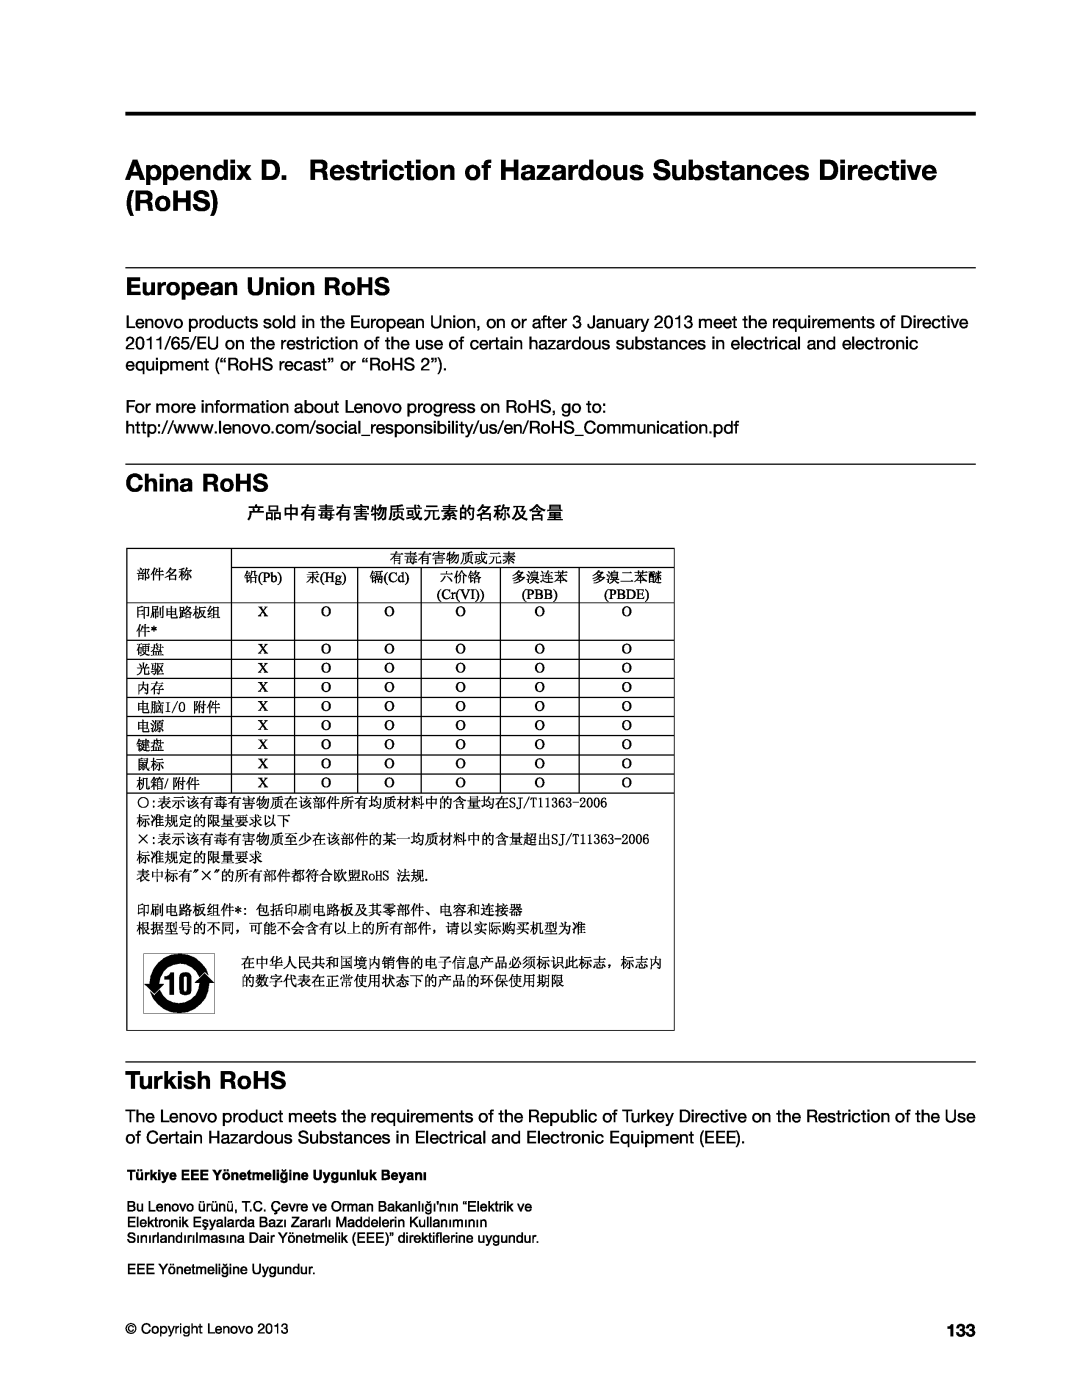 Lenovo M73 Appendix D. Restriction of Hazardous Substances Directive RoHS, European Union RoHS, China RoHS Turkish RoHS 